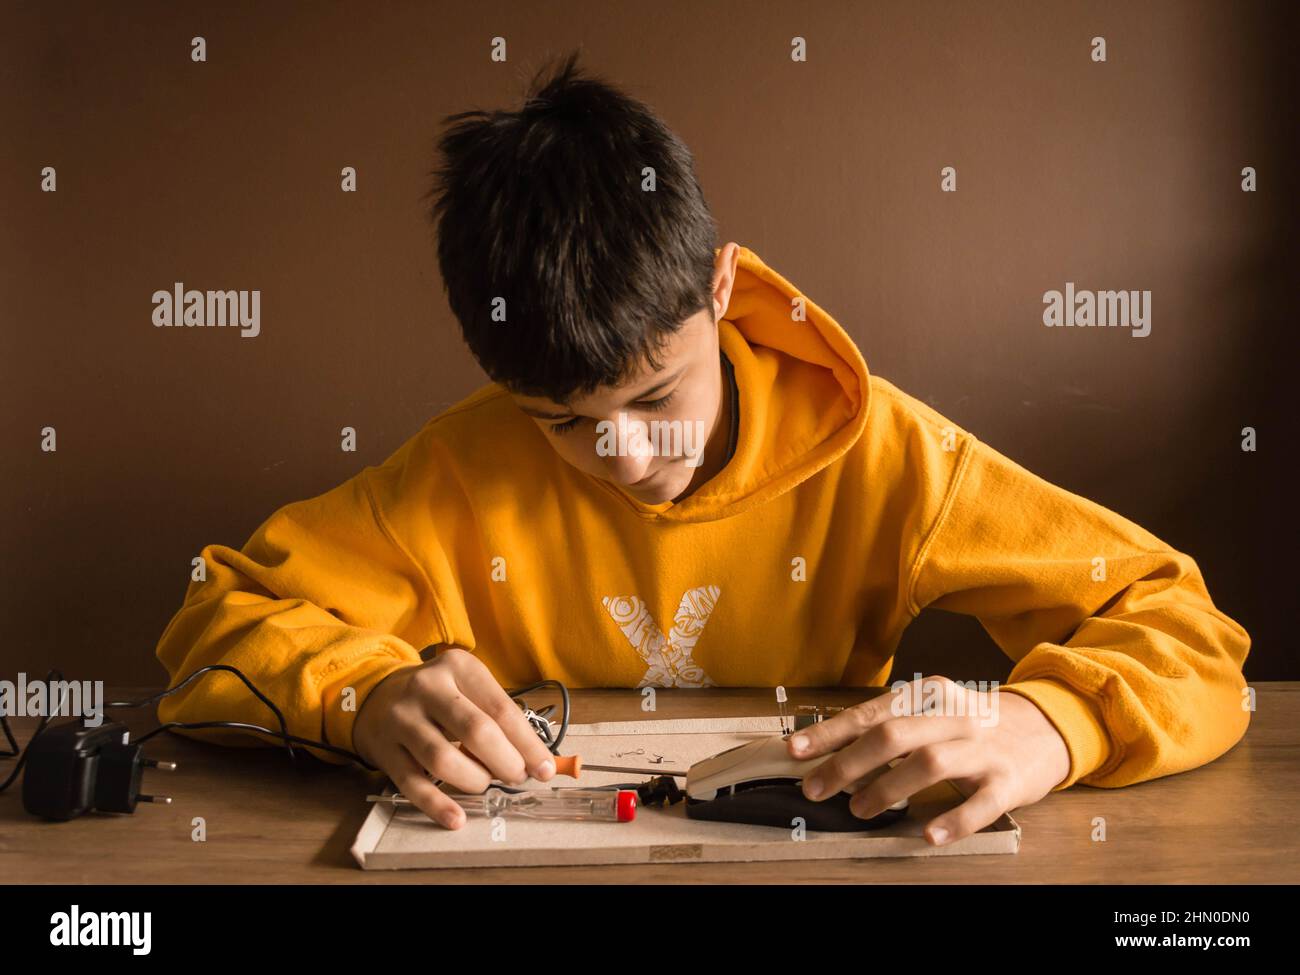 Un ragazzo adolescente con capelli marroni indossa una felpa con cappuccio gialla. Sta riparando le cose con gli attrezzi. Foto Stock